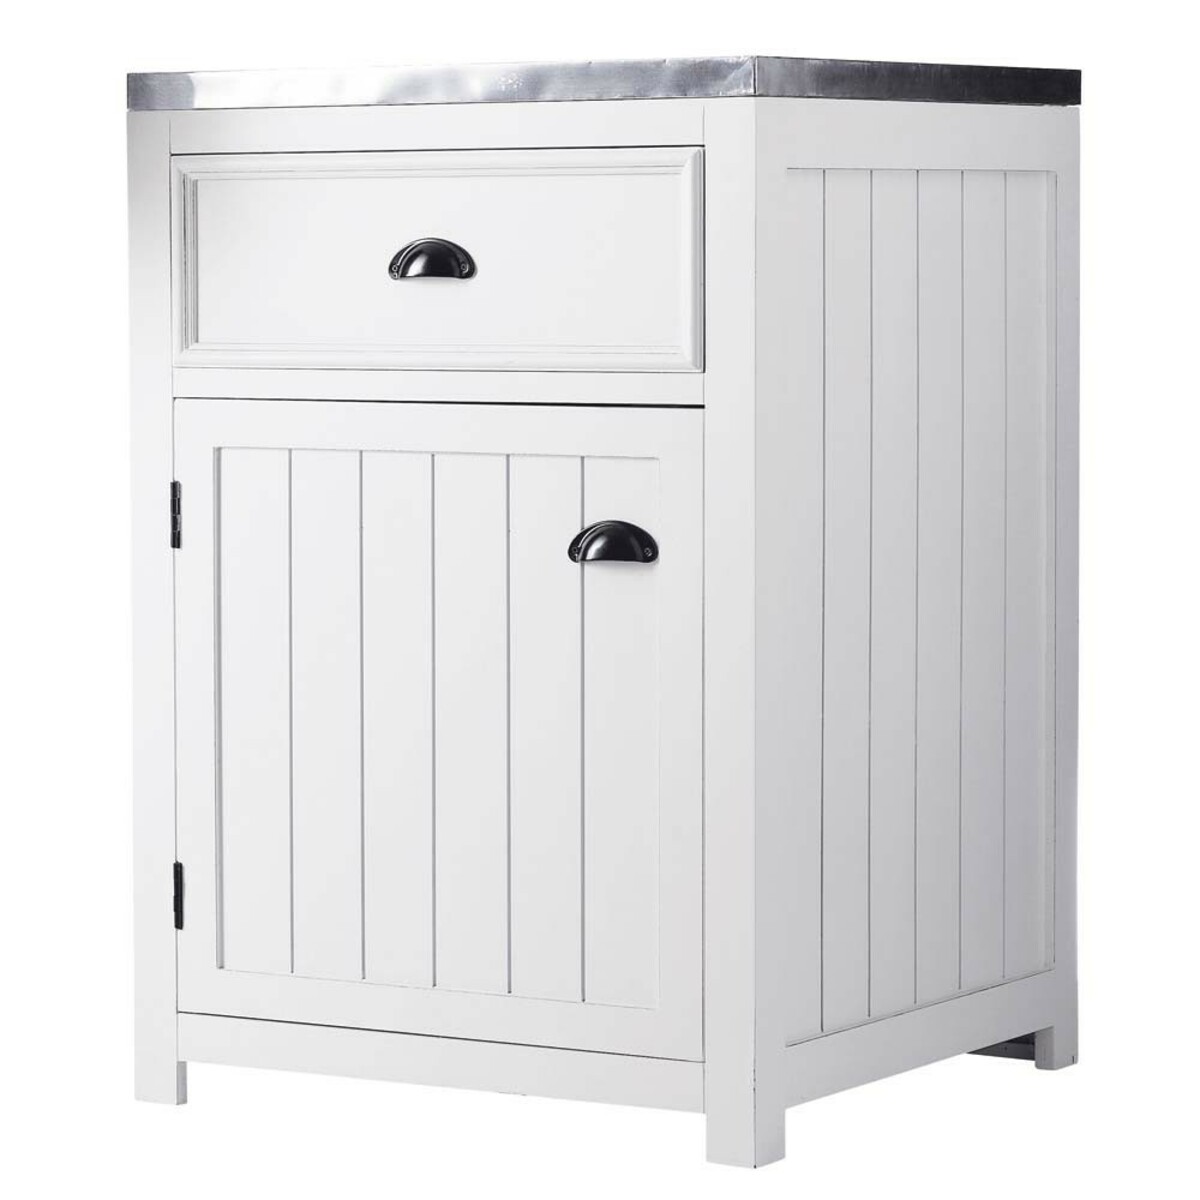 Mueble bajo de cocina blanco de madera apertura derecha An. 60 cm Newport